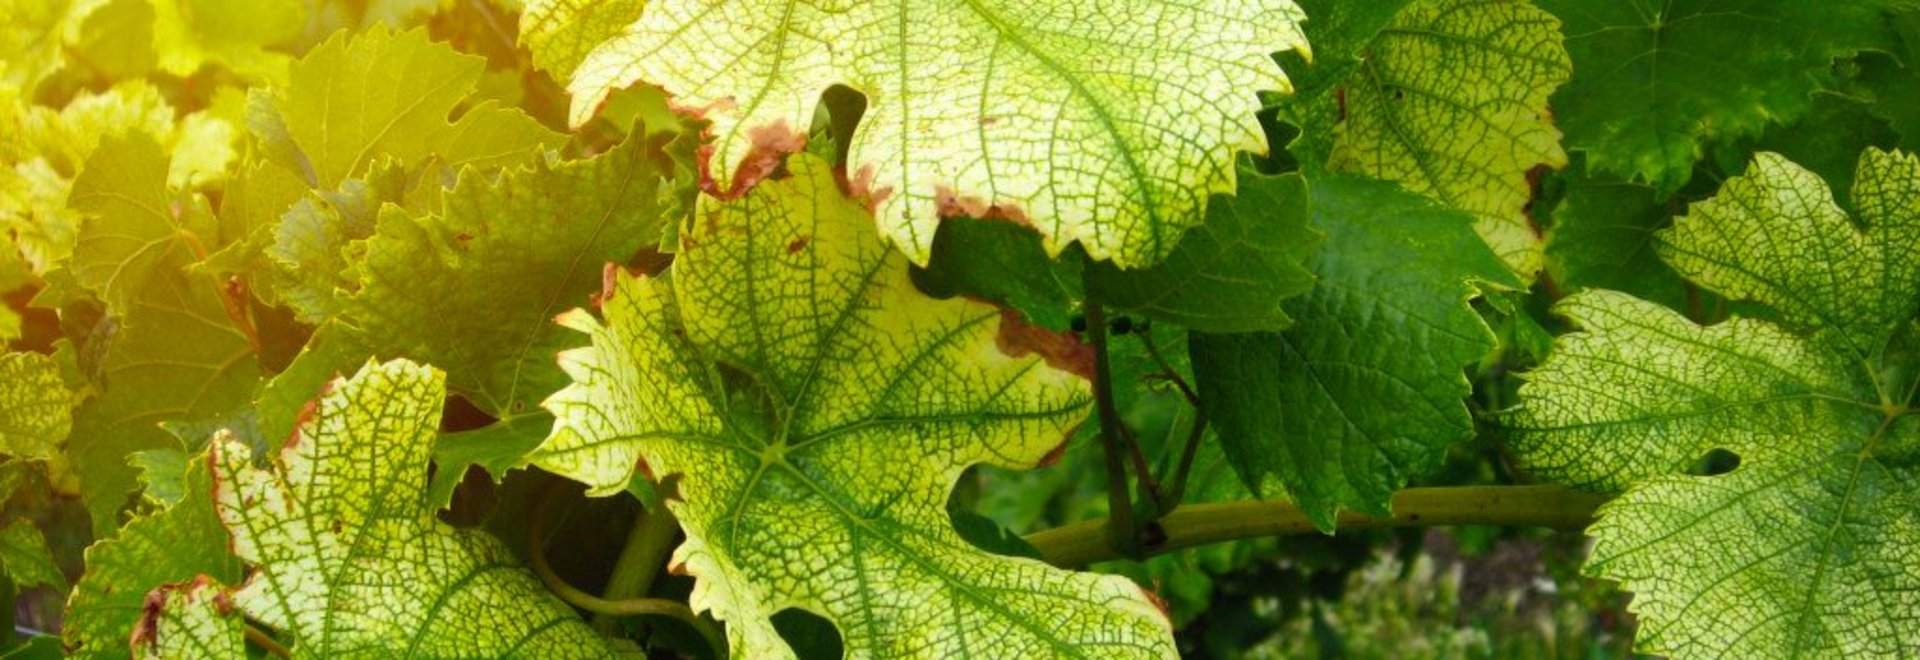 Blätter von Weinreben mit deutlichem Eisenmangel (gelbe Flecken)